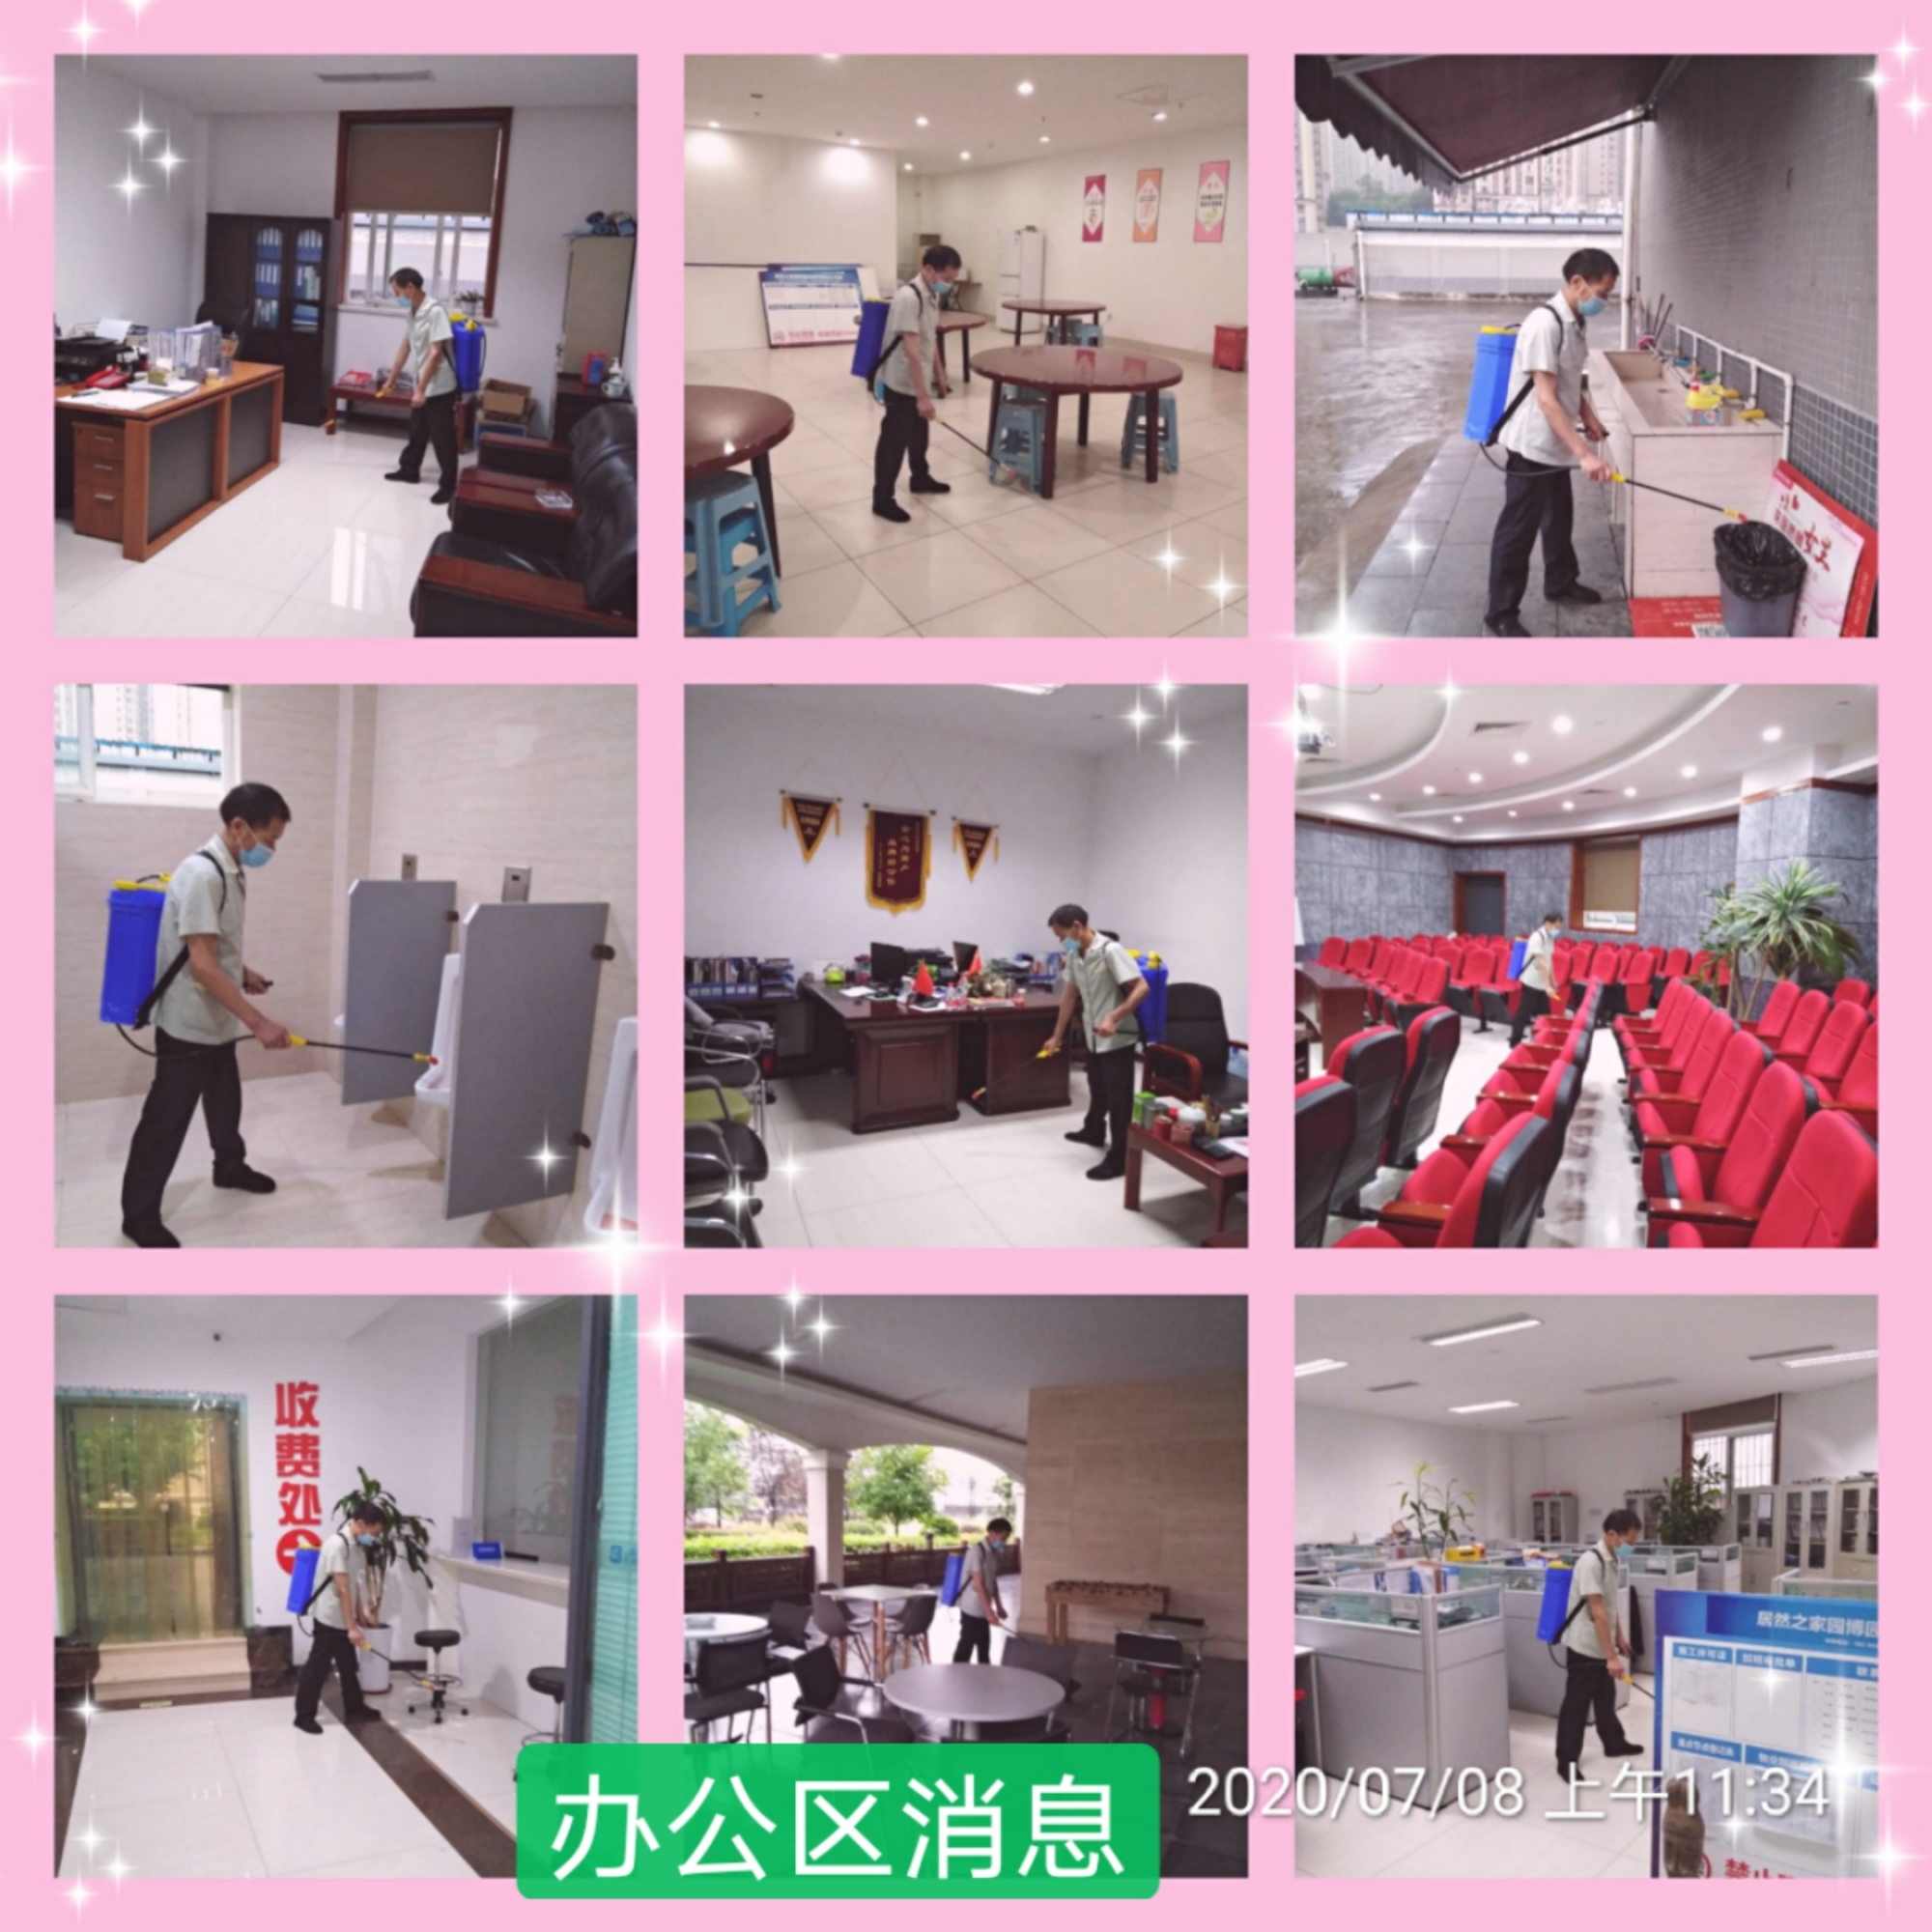 重庆聚信物业管理有限公司 环境照片活动图片